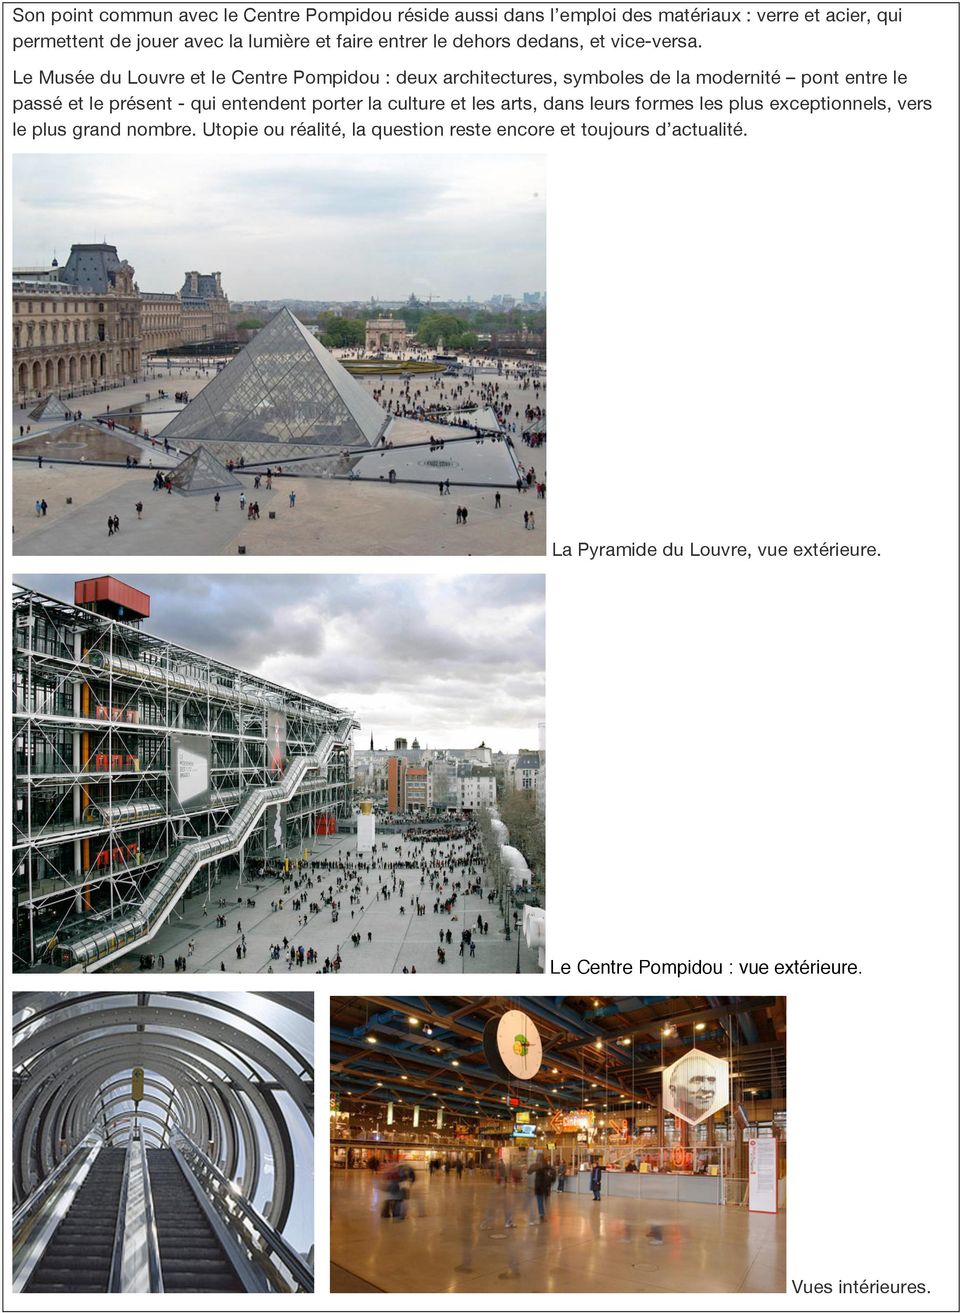 Le Musée du Louvre et le Centre Pompidou : deux architectures, symboles de la modernité pont entre le passé et le présent - qui entendent porter la